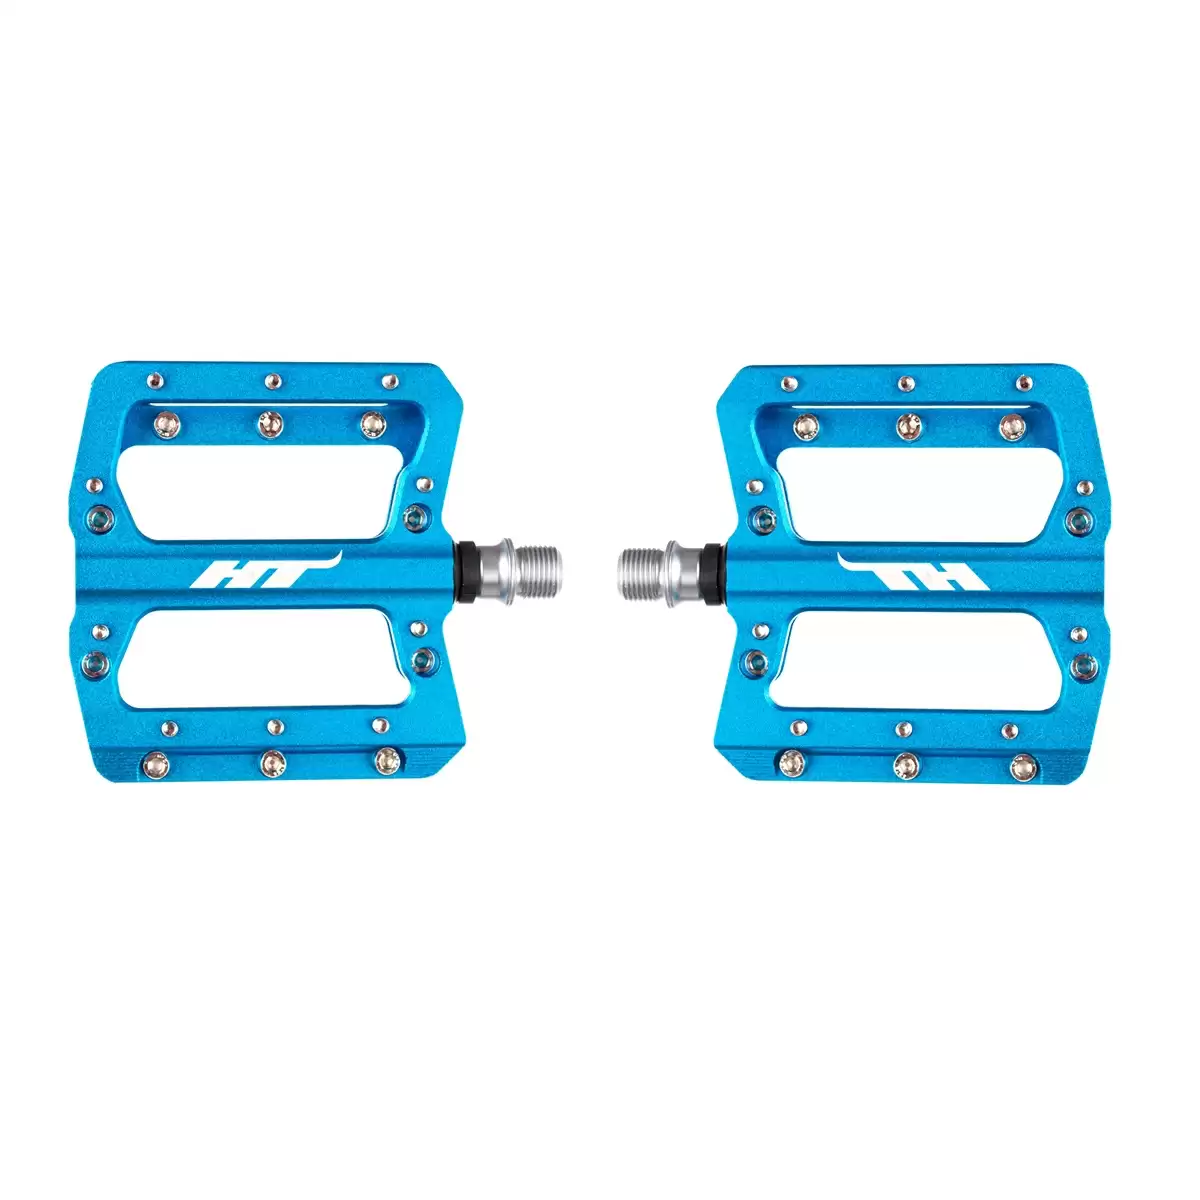 AN14A flat pedals blue marine - image